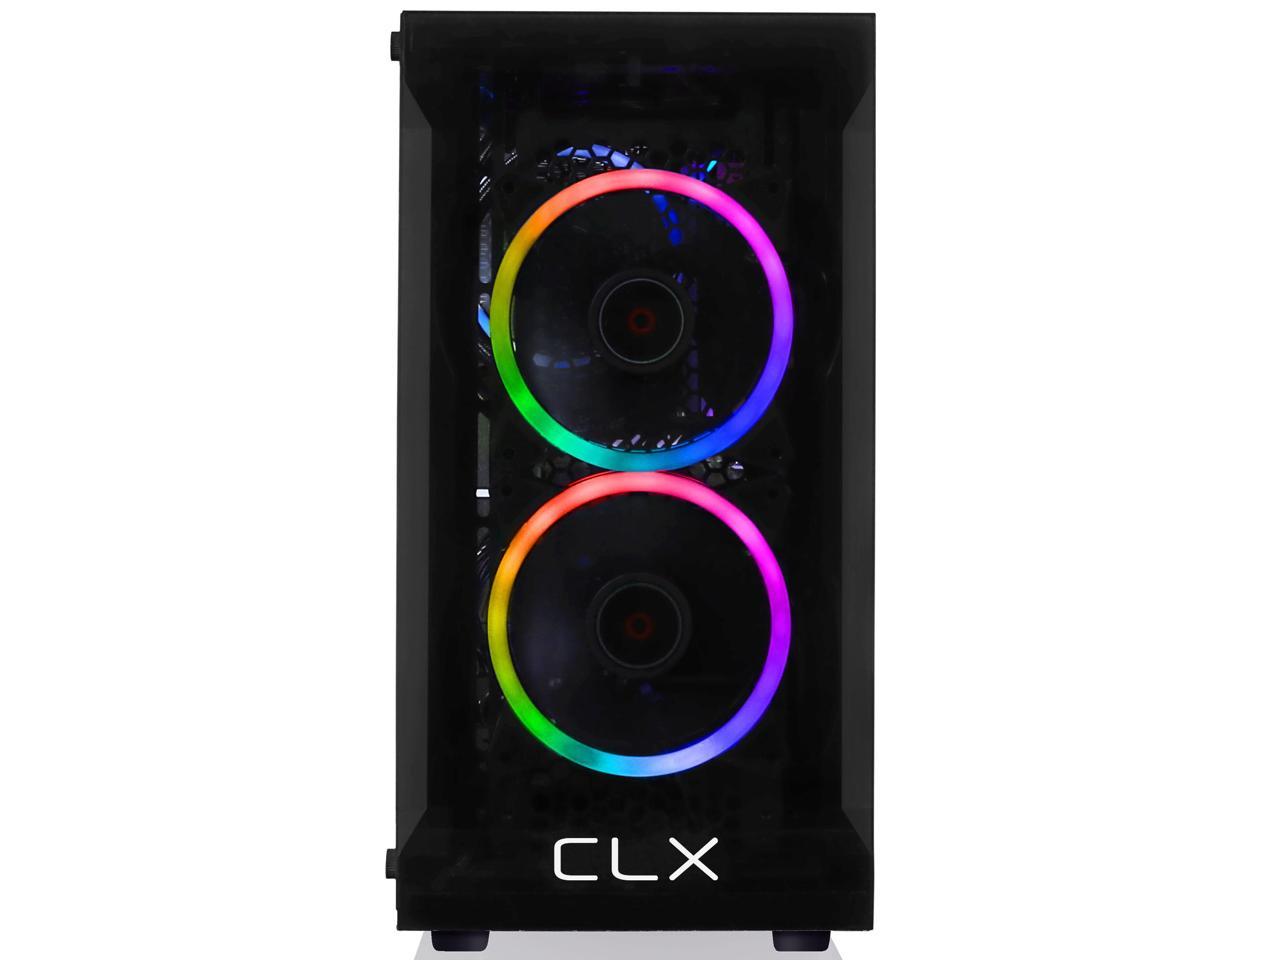 CLX Set Gaming Desktop Intel Core i5 11400F 2.6GHz 6-Core Processor, 16GB 